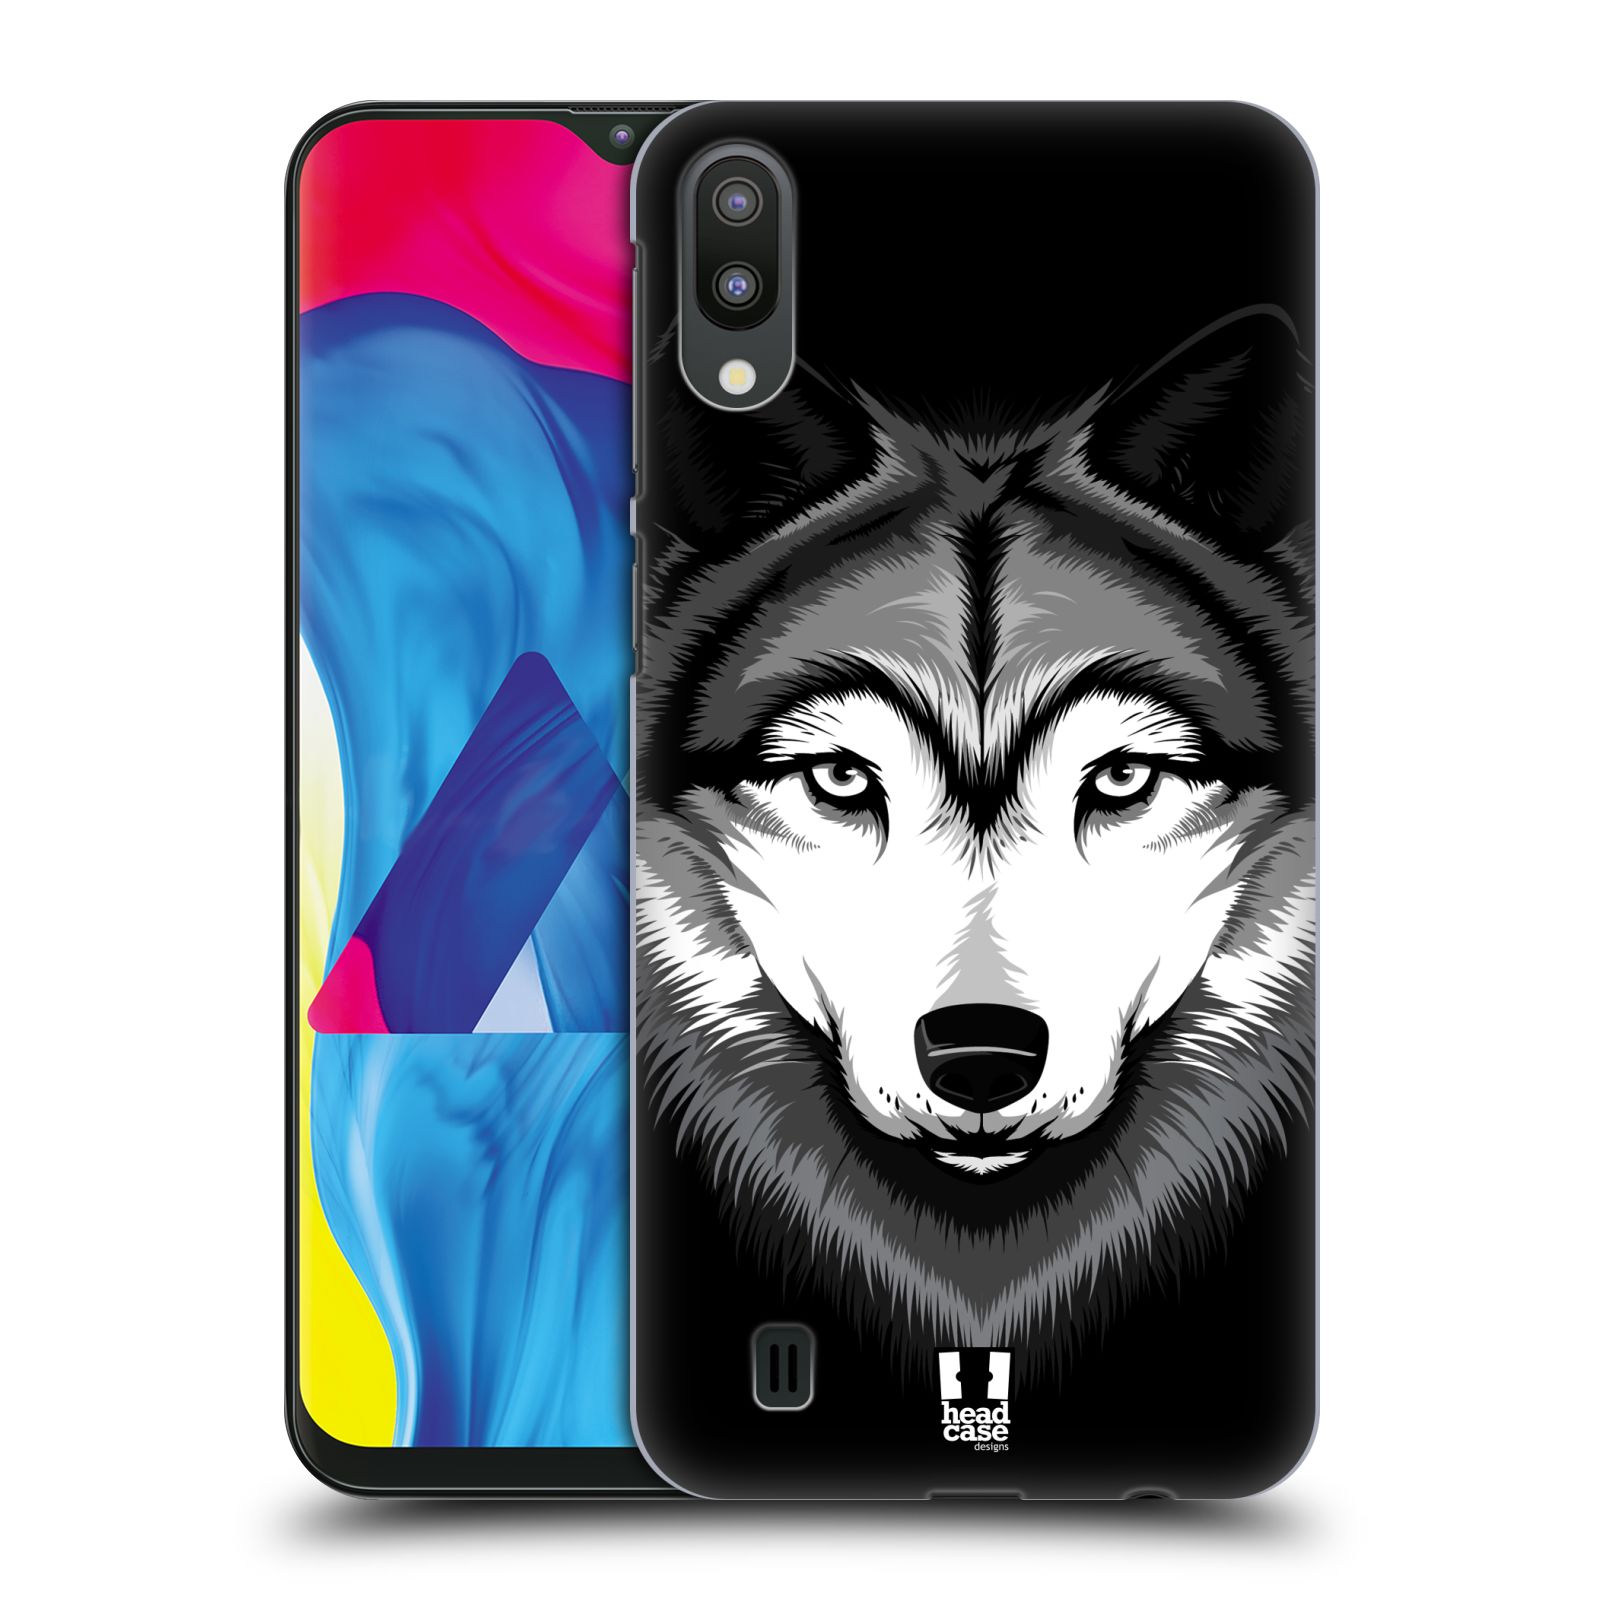 Plastový obal HEAD CASE na mobil Samsung Galaxy M10 vzor Zvíře kreslená tvář 2 vlk